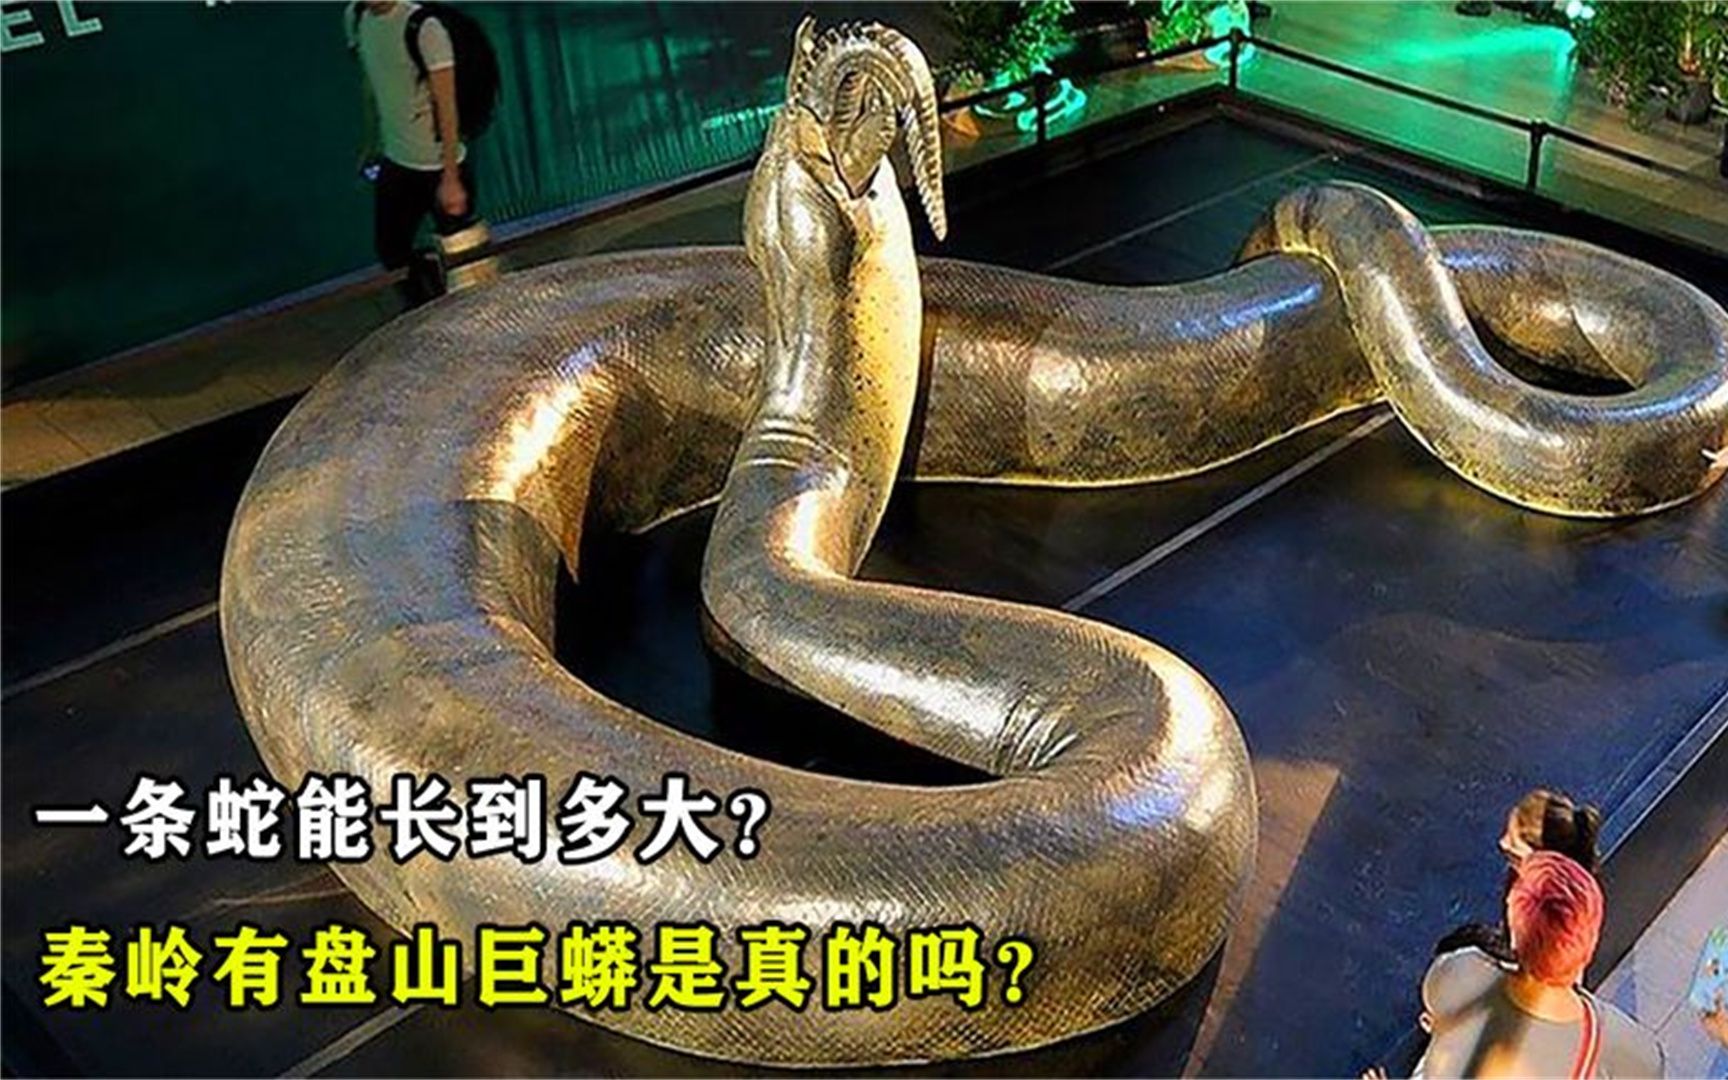 世界上最大的蛇,到底能长到多大?秦岭真的有盘山巨蟒吗?